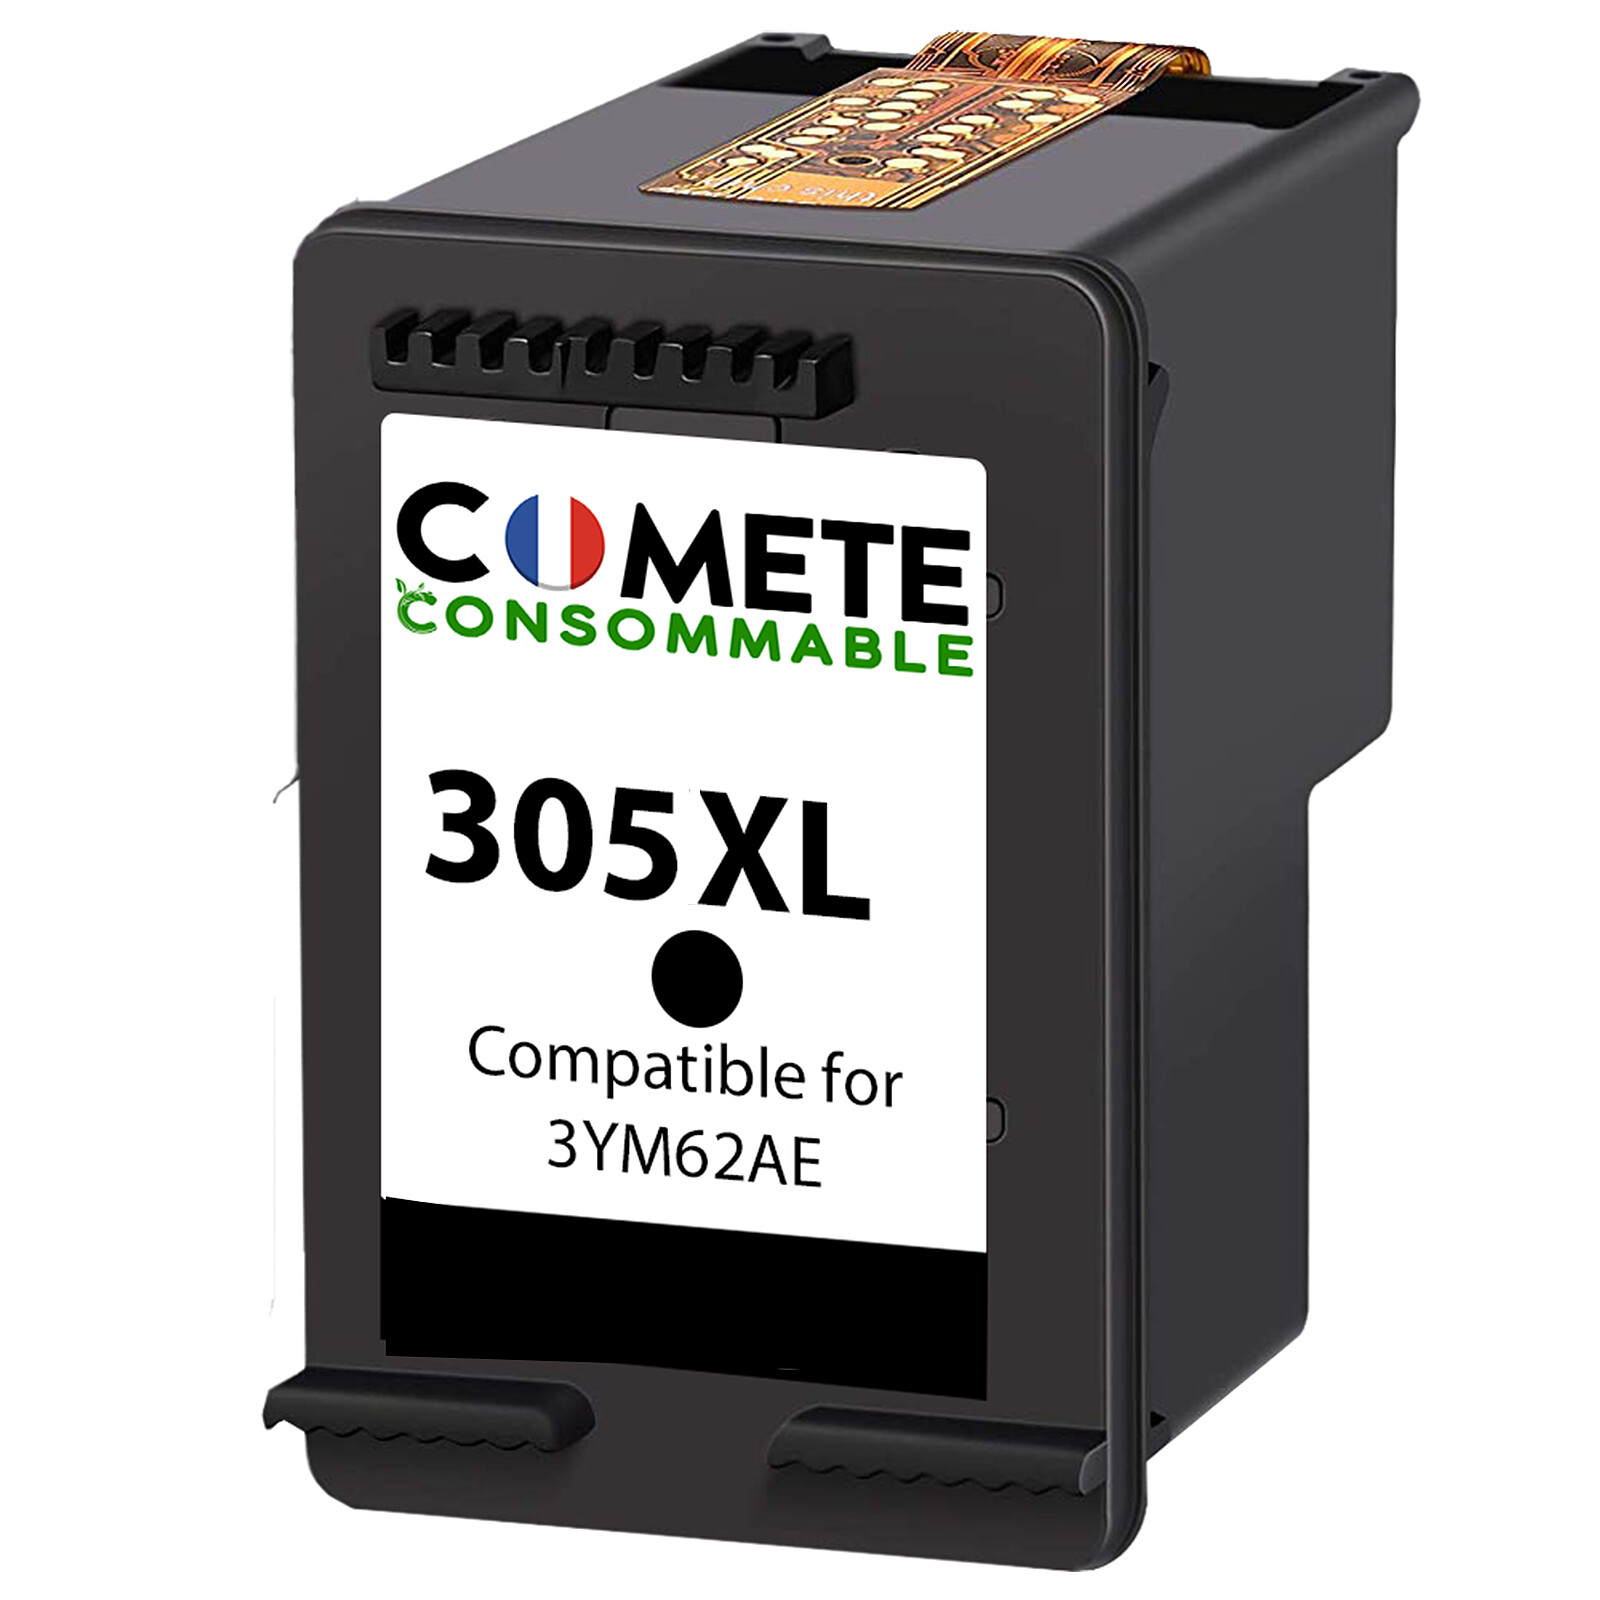 COMETE - 305XL - 1 cartouche compatible 305 XL pour Imprimante HP